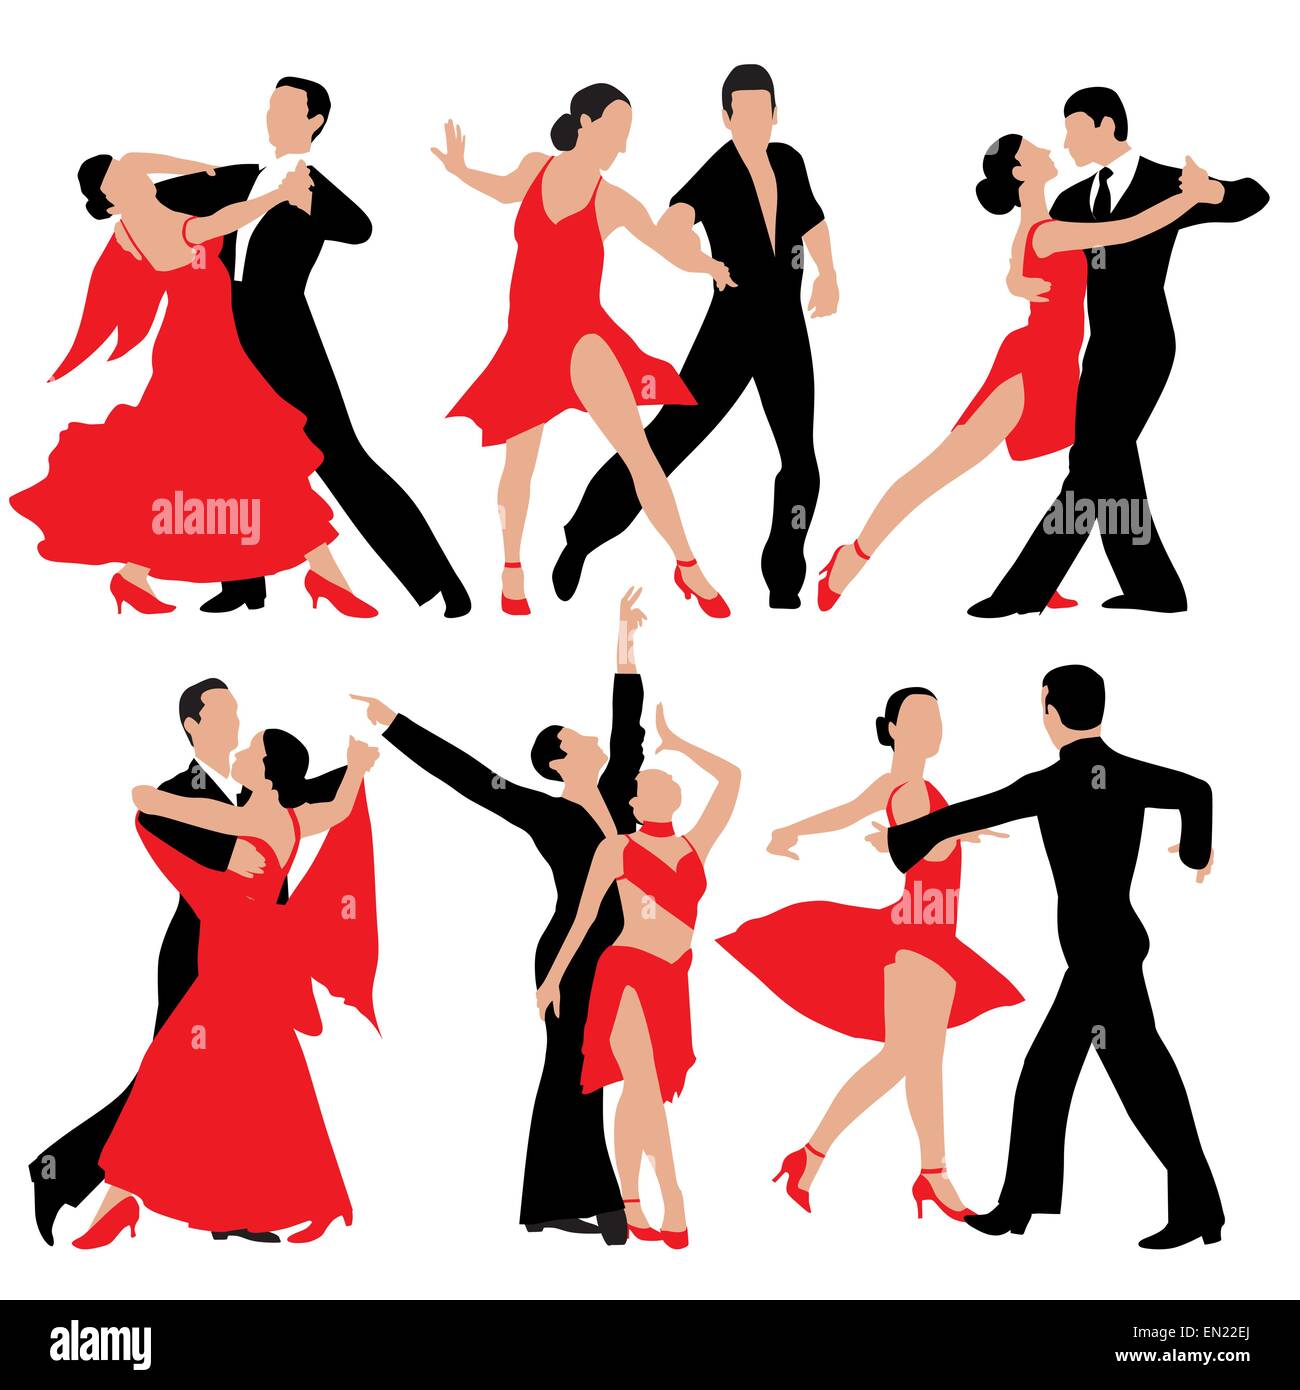 Satz von tanzen Menschen Silhouetten. Vektor-illustration Stock Vektor